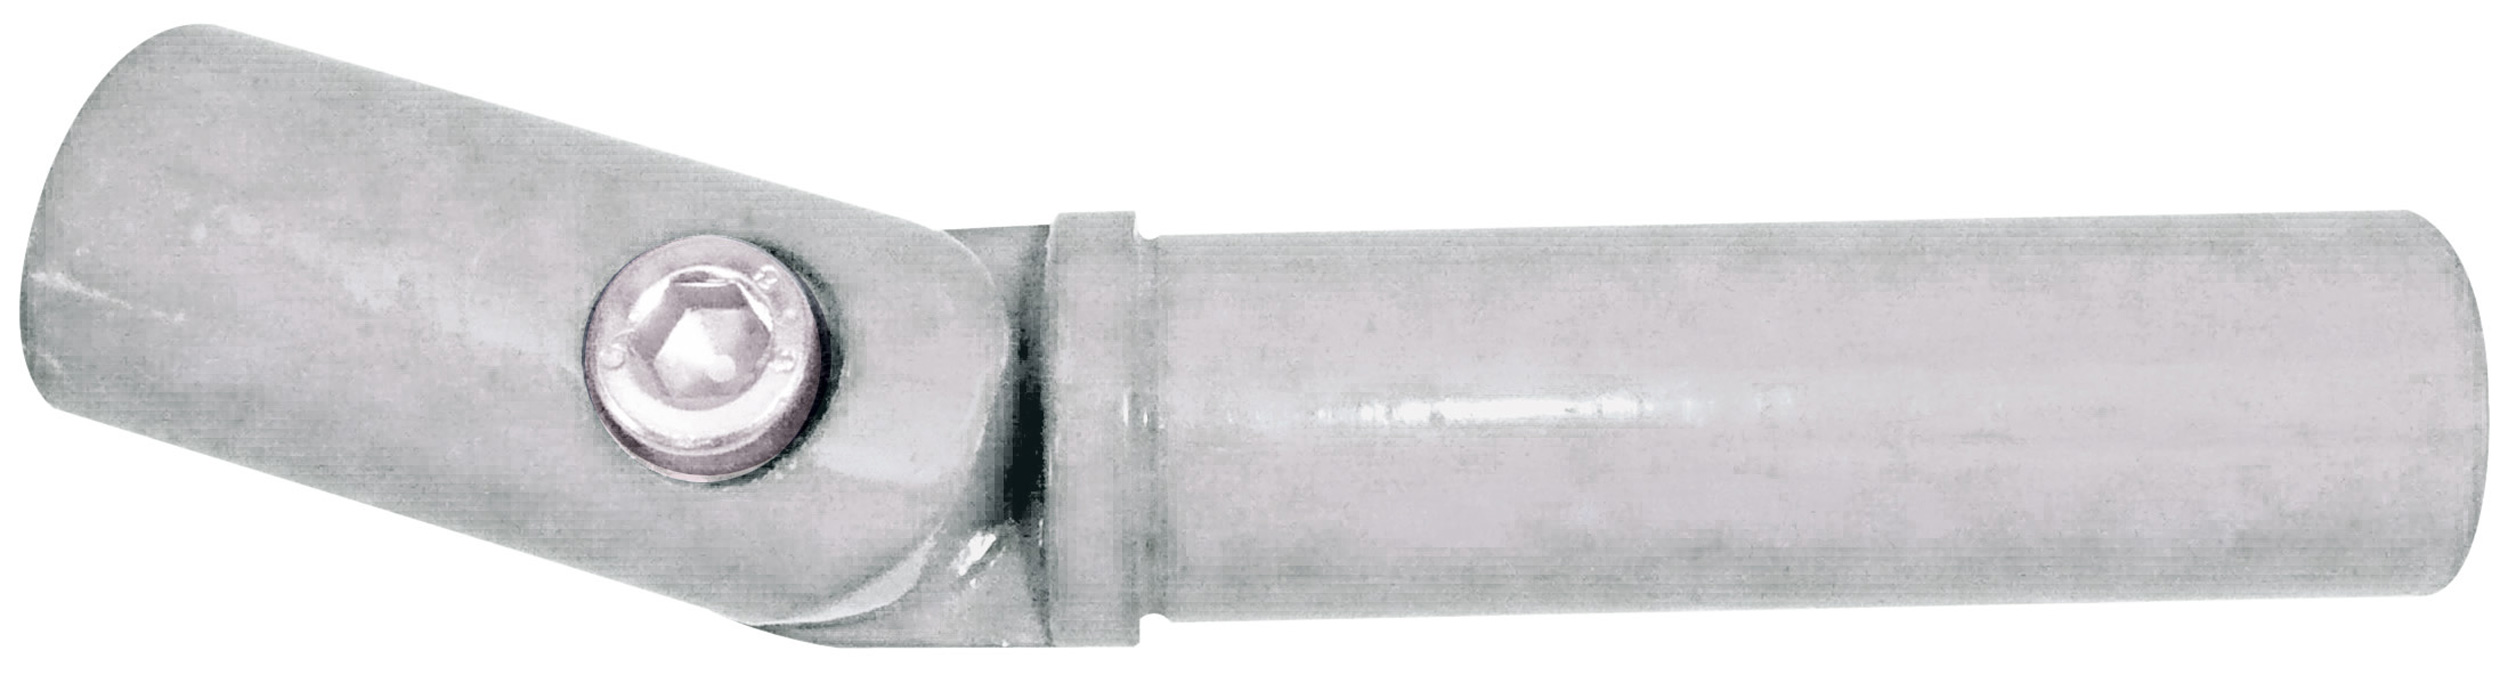 Schake Schutzgeländer Alu-Gelenkstück Ø 33,7 mm verzinkt